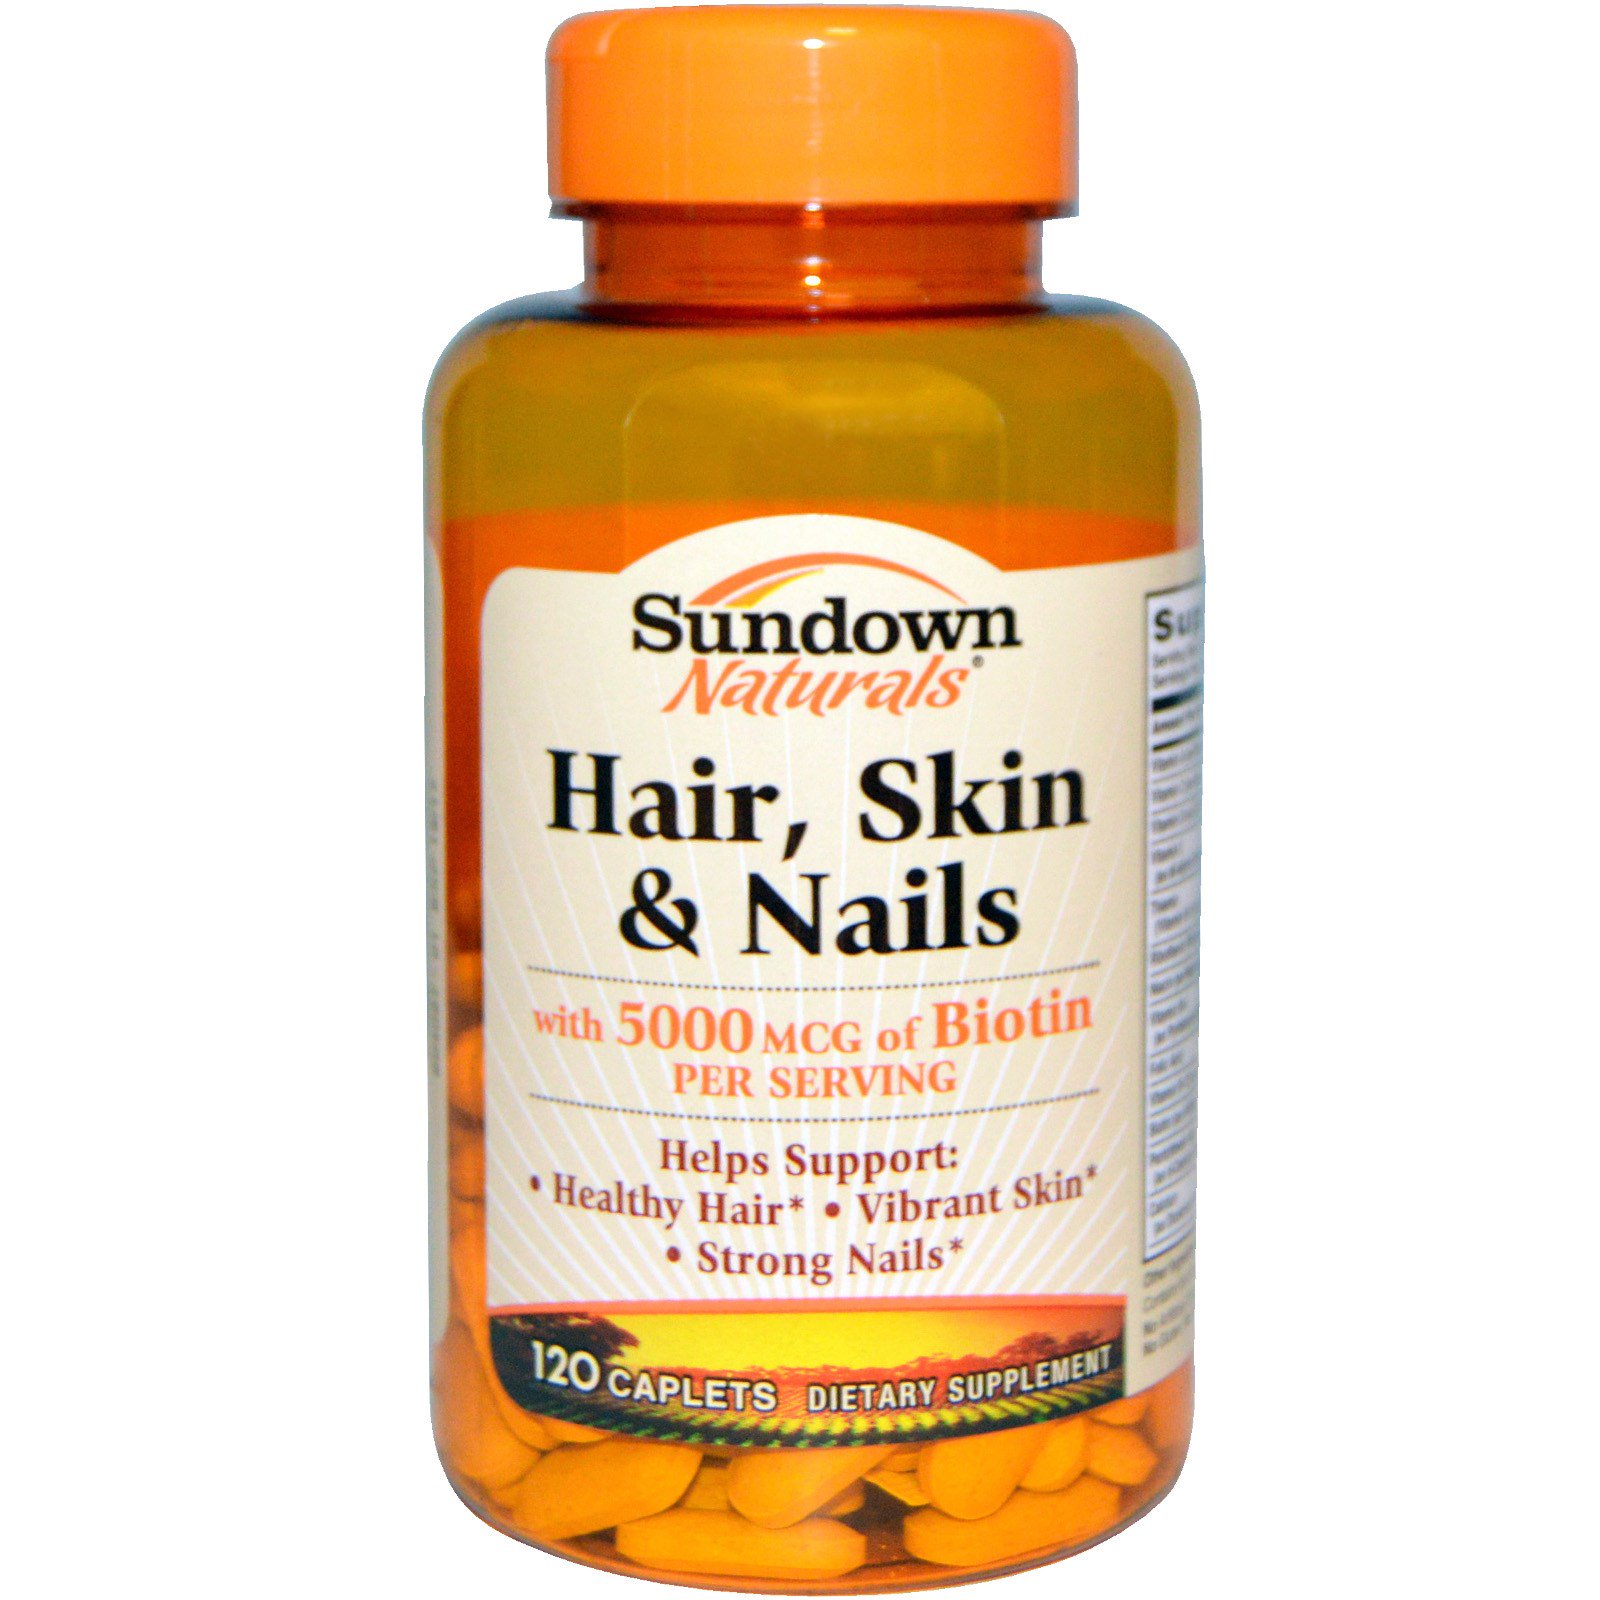 Лучшие витамины для женщин волосы ногти кожа. Sundown naturals, hair, Skin & Nails, 120 Caplets. Hair Skin Nails витамины. Витамины для волос ногтей и кожи айхерб. Американские витамины для волос ногтей и кожи.